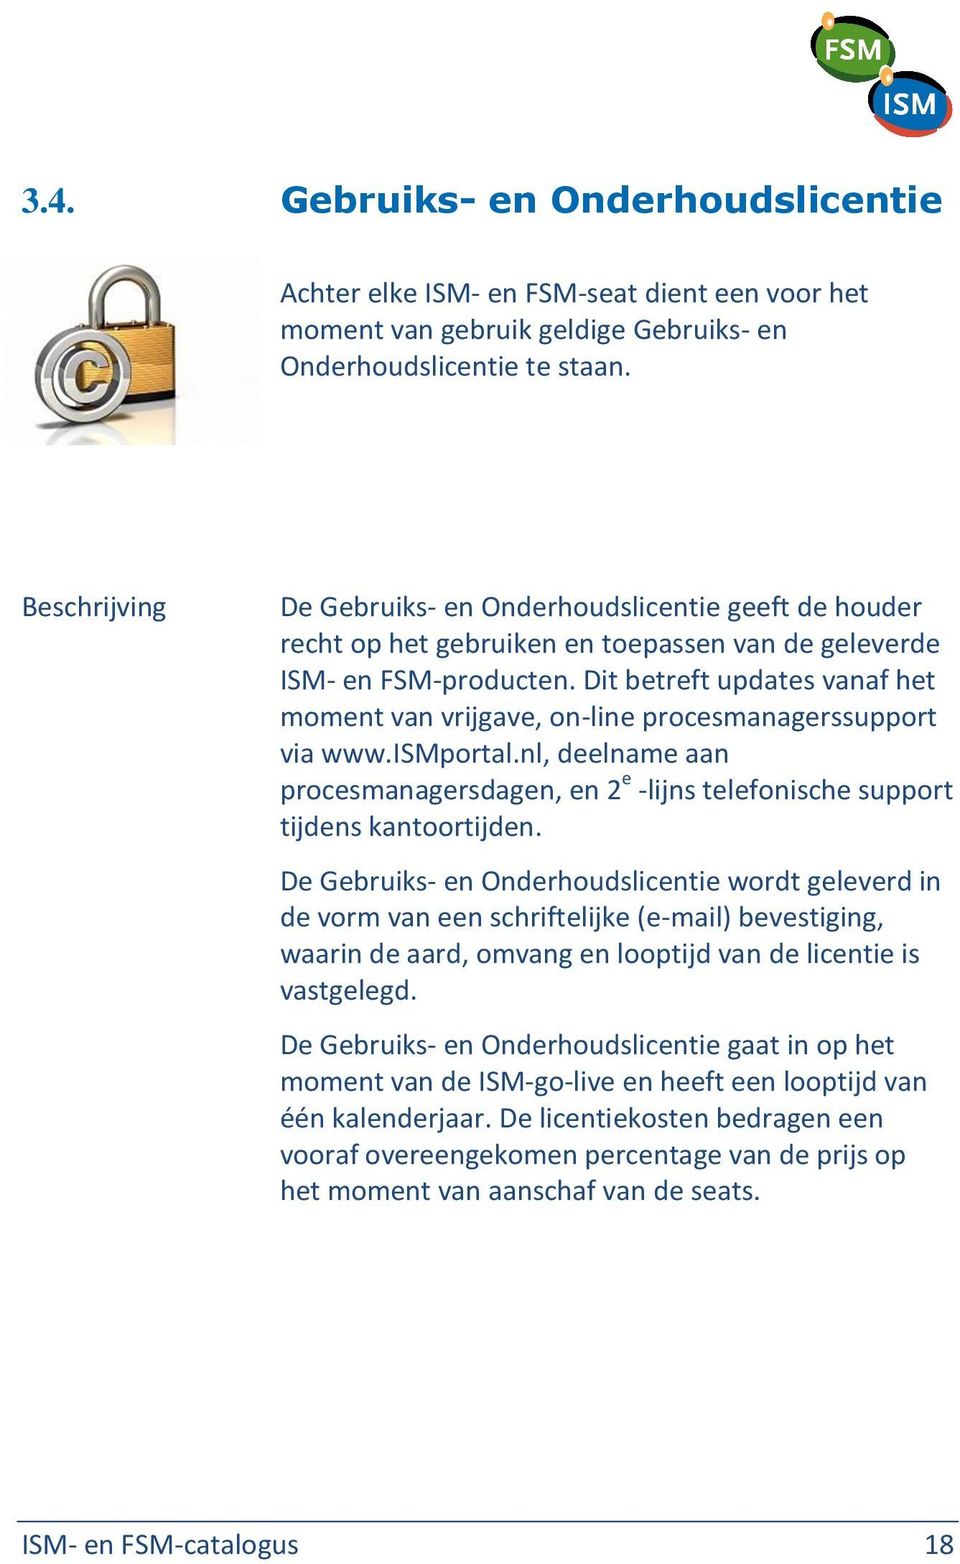 Dit betreft updates vanaf het moment van vrijgave, on-line procesmanagerssupport via www.ismportal.nl, deelname aan procesmanagersdagen, en 2 e -lijns telefonische support tijdens kantoortijden.